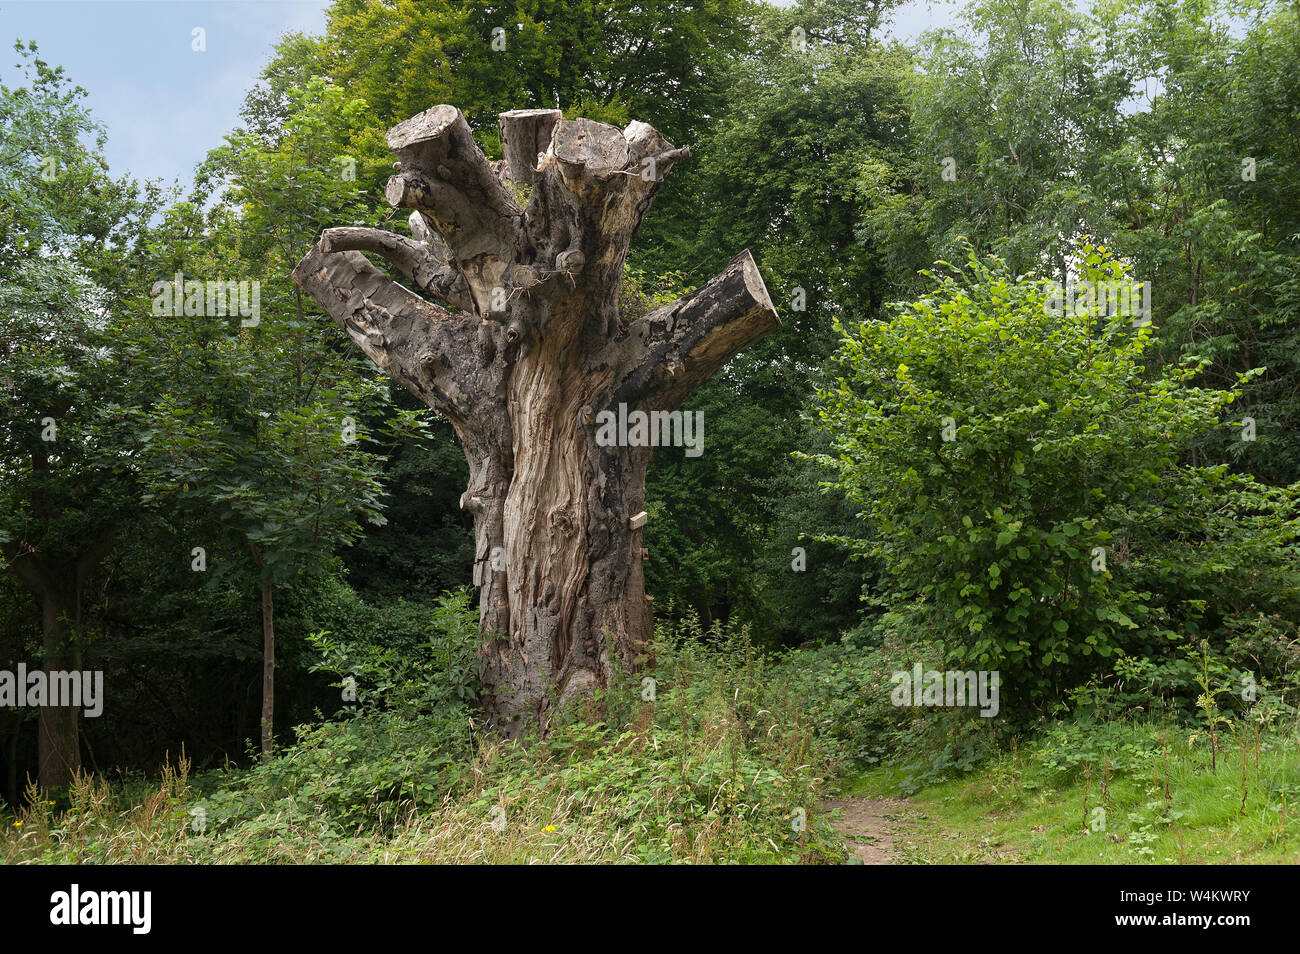 Sympathisch Forstverwaltung, Dead Horse chestnut Tree, Aesculus hippocastanum, abgeholzt, links steht als Lebensraum für Käfer, wilde Tiere im Wald Stockfoto